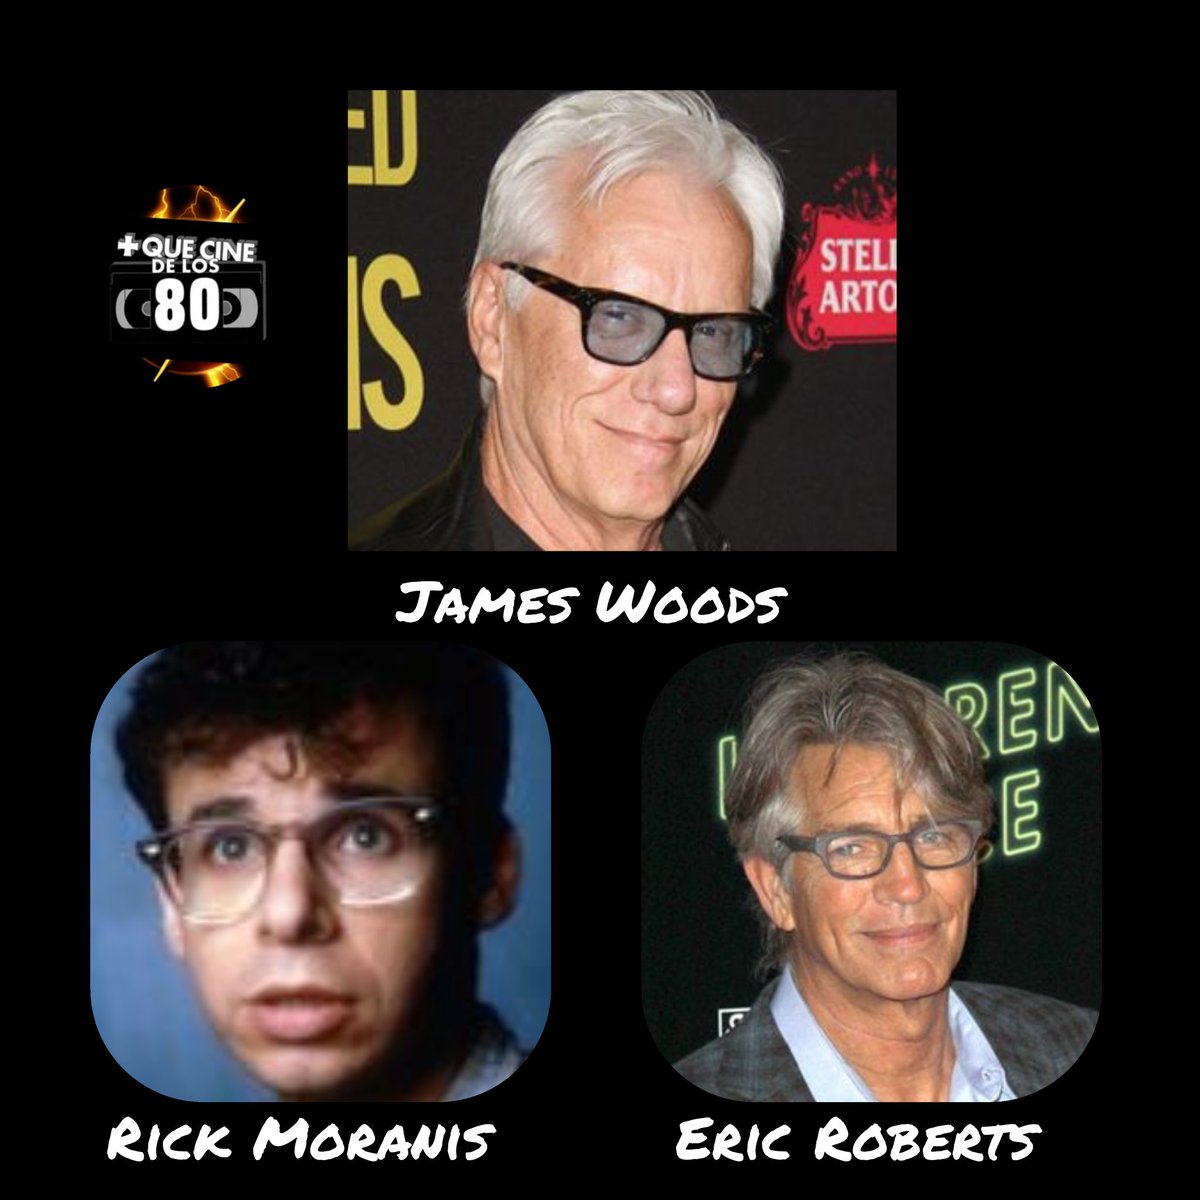 Buenos días #Ochenters hoy felicitamos a tres de #Losnuestros como son #JamesWoods #RickMoranis y @EricRoberts
Que tengáis buen lunes #Ochenters